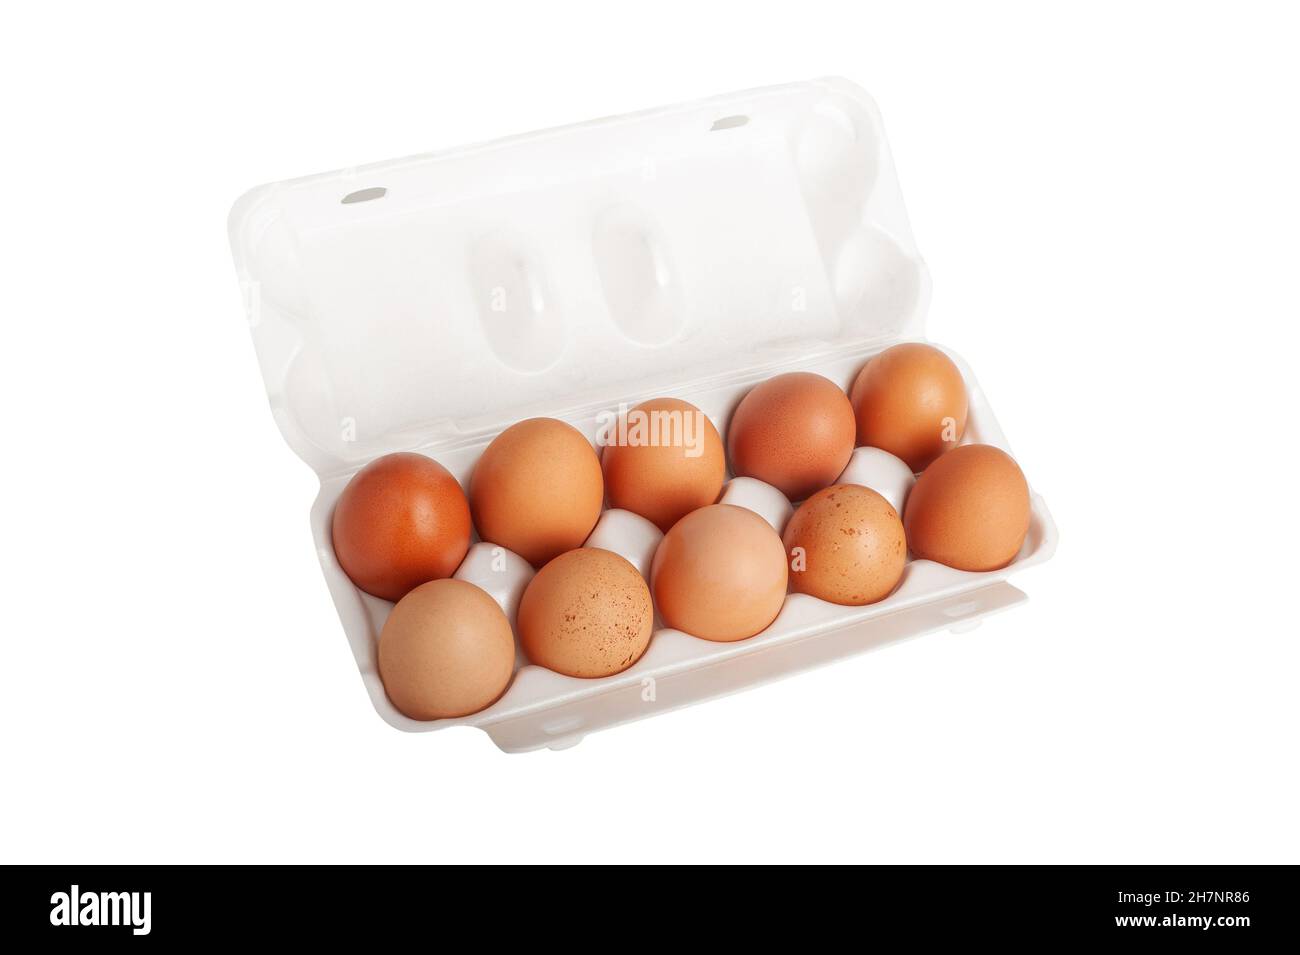 Grandi uova rurali rosse in un cerotto di plastica isolato su sfondo bianco Foto Stock